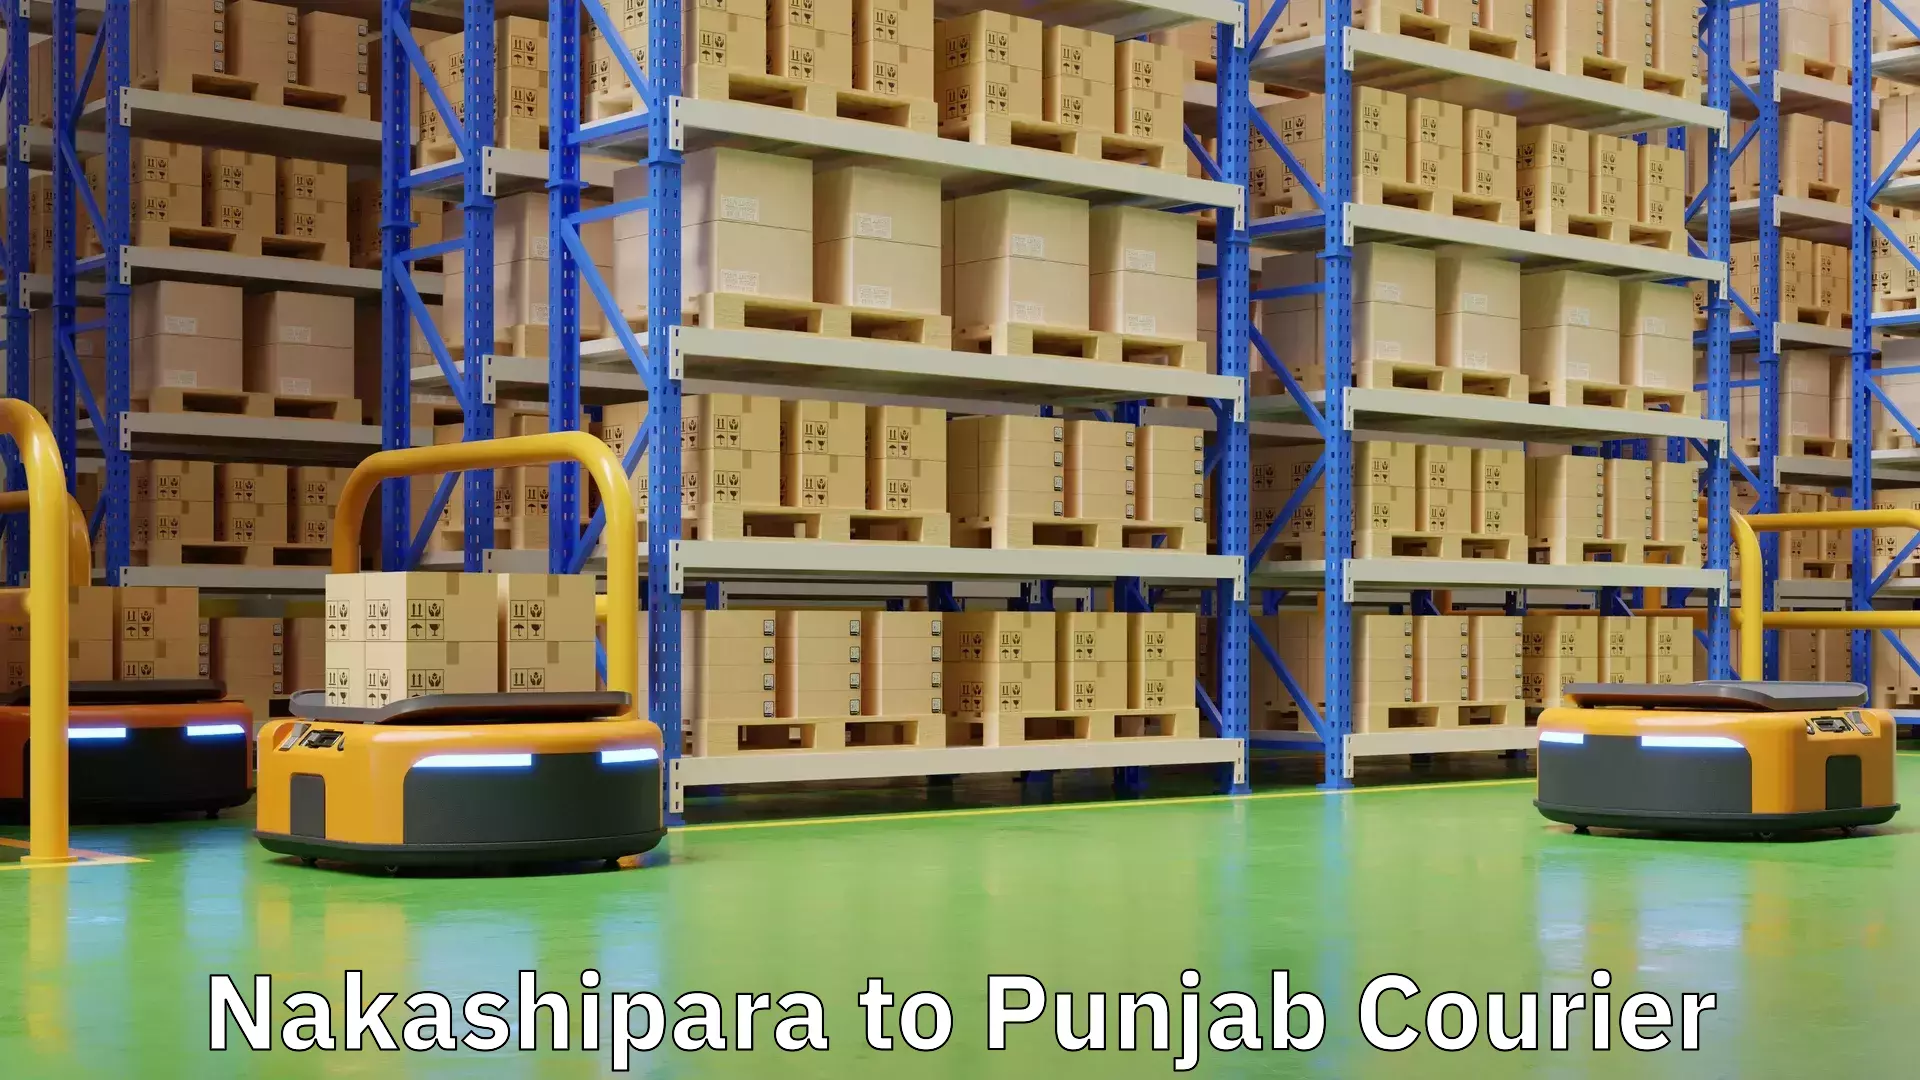 Express shipping Nakashipara to Amritsar